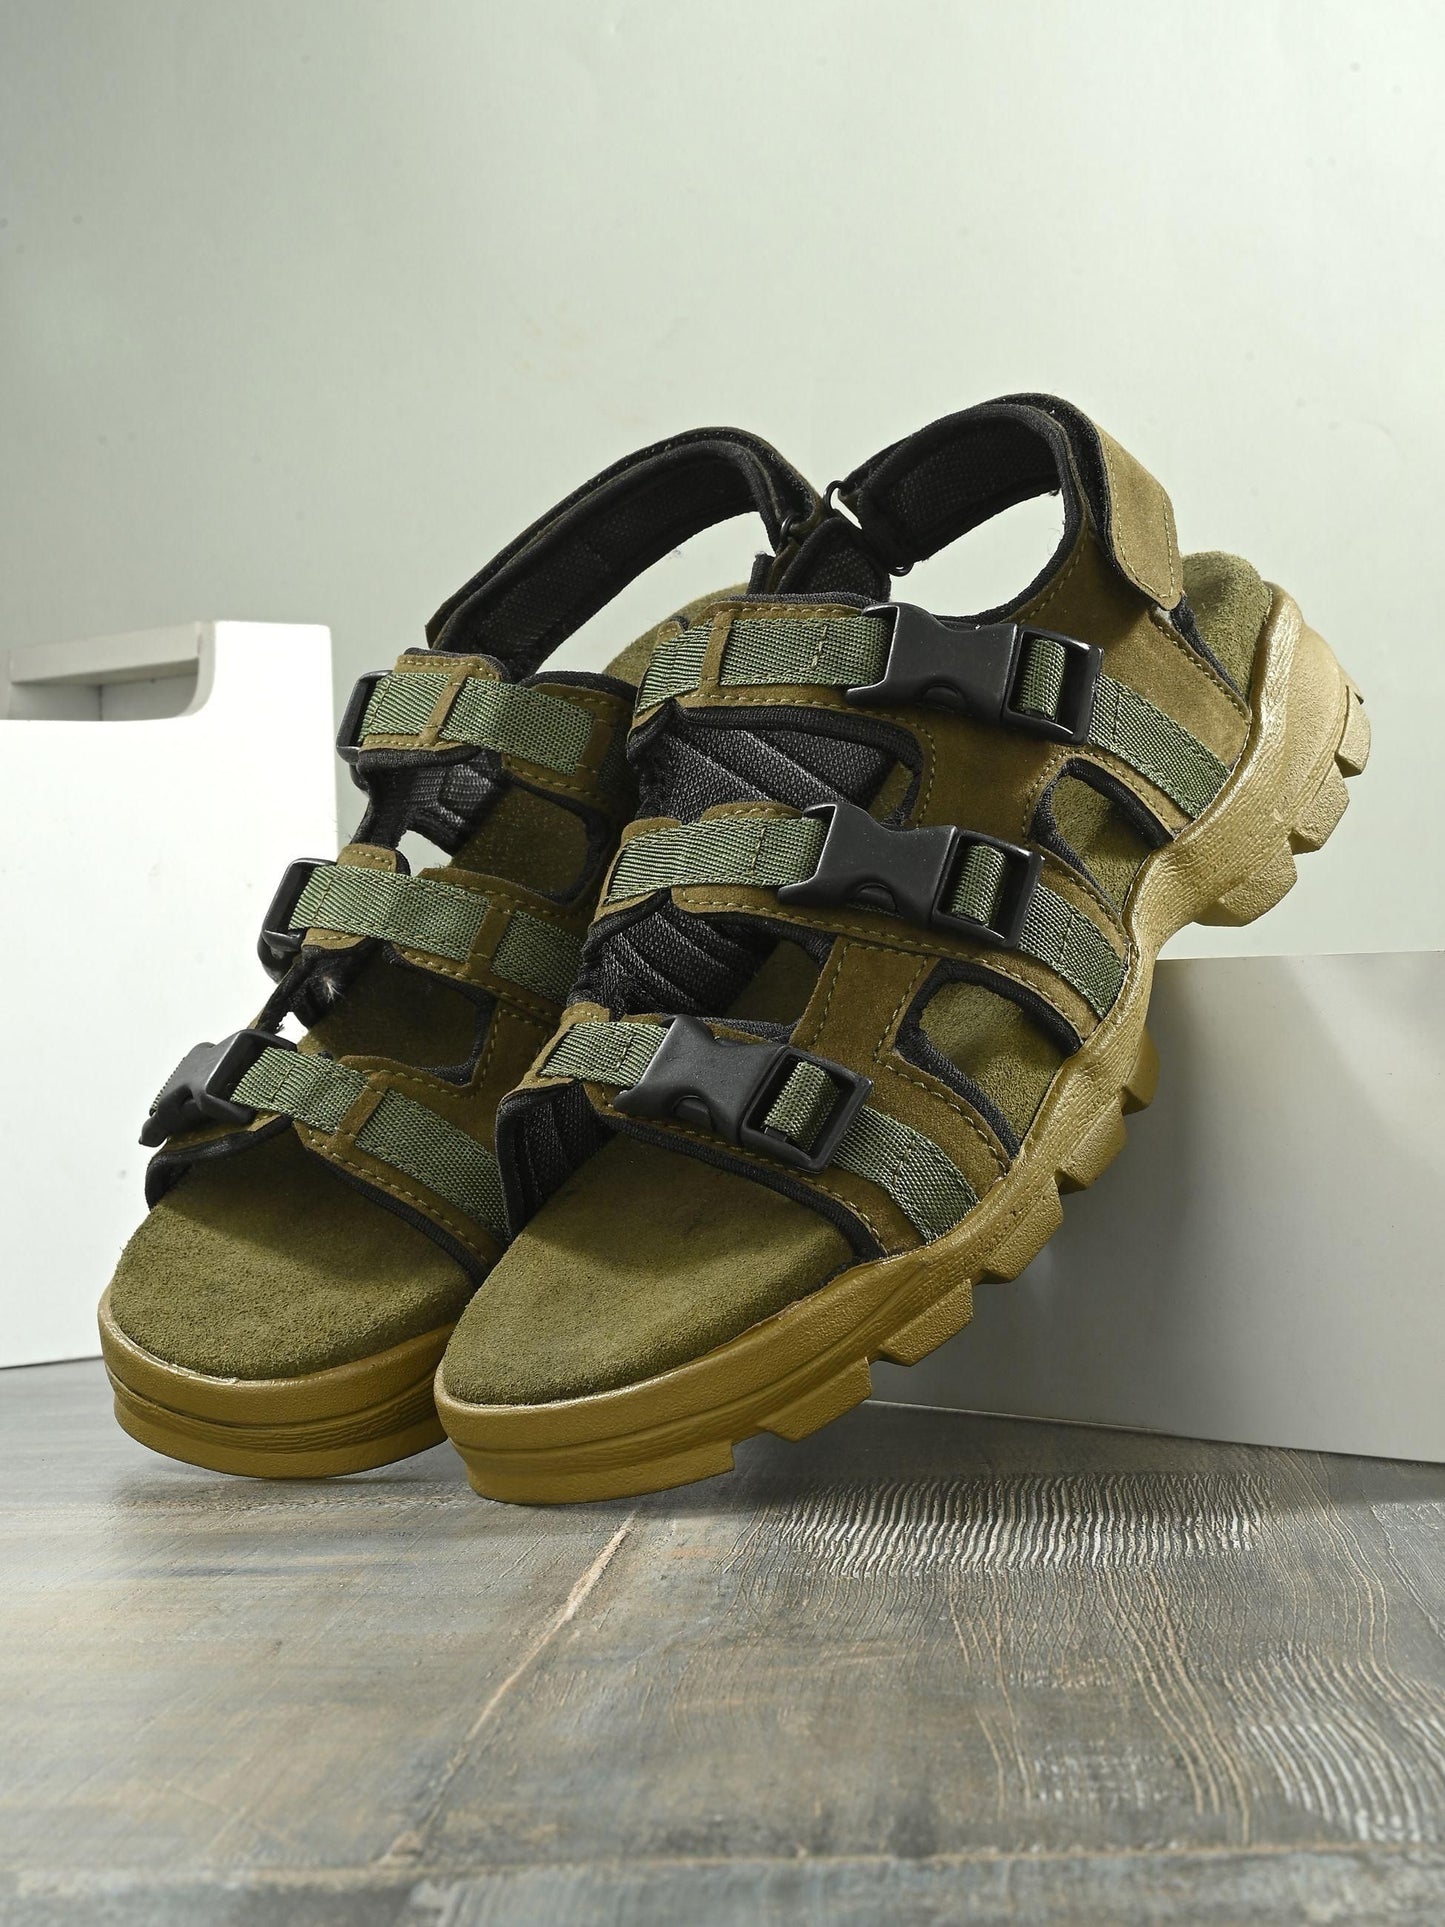 BUCIK Men's Leather Slip-On Sandal